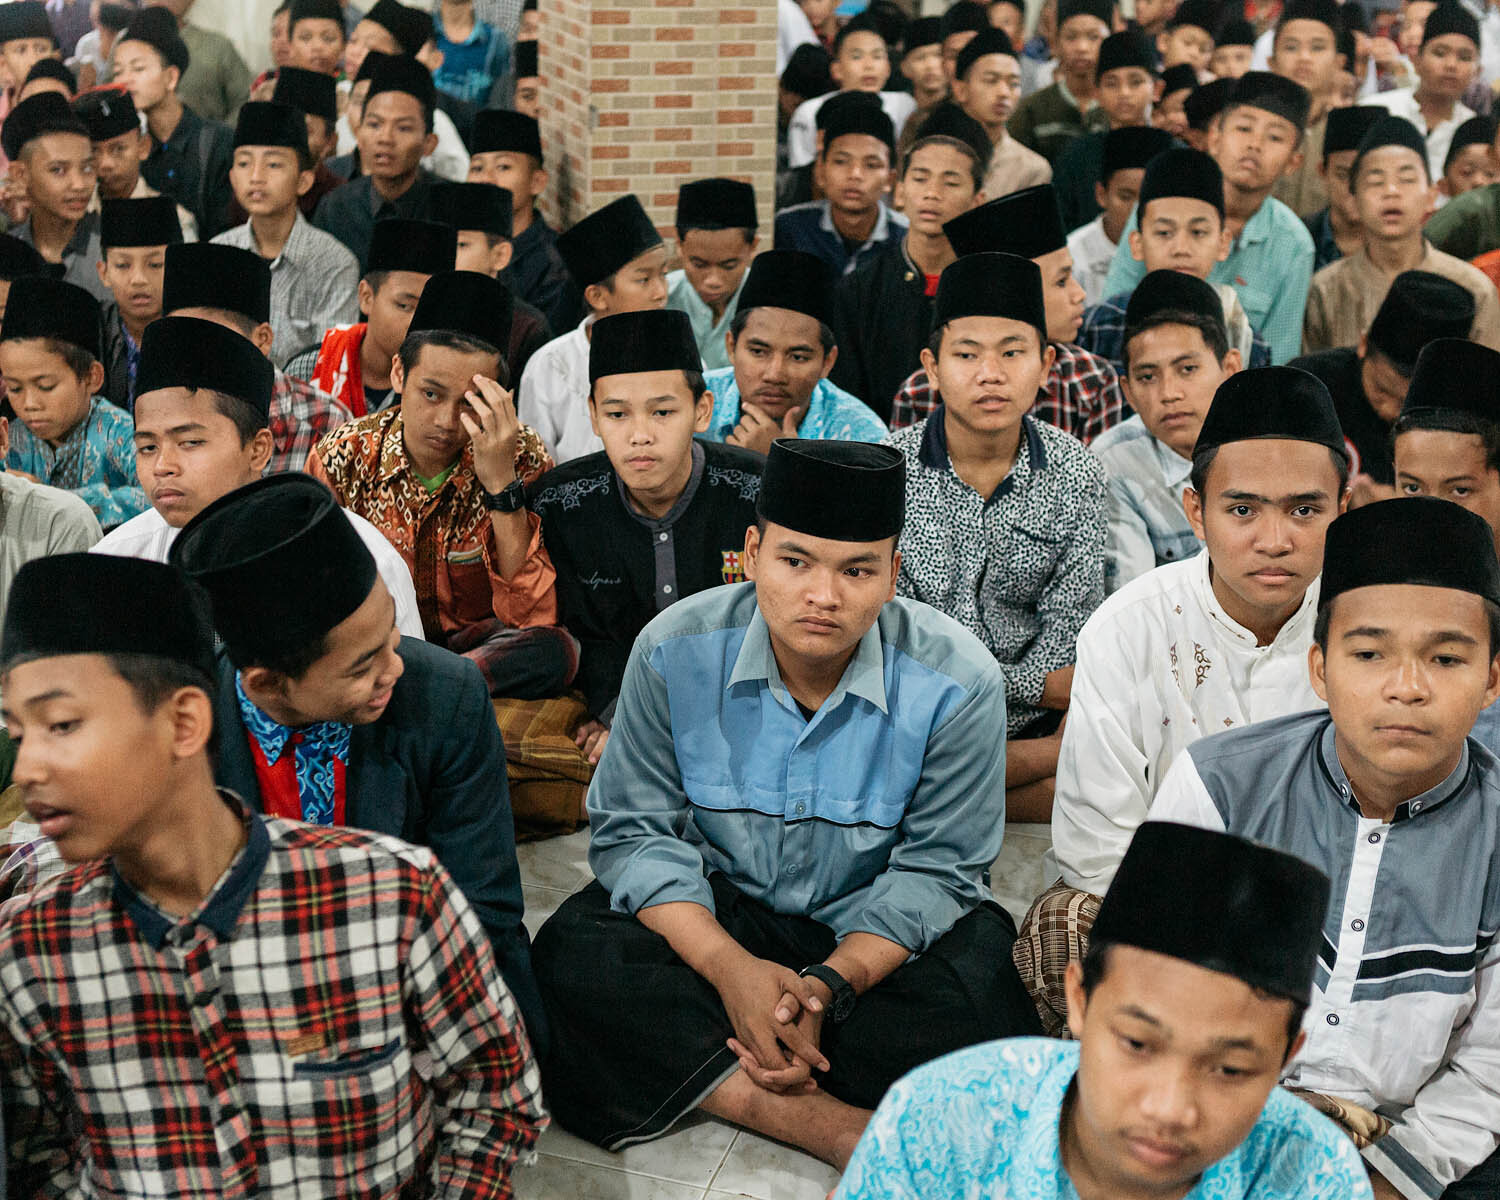 ISLAM_INDONESIA_PESANTREN_0003.jpg